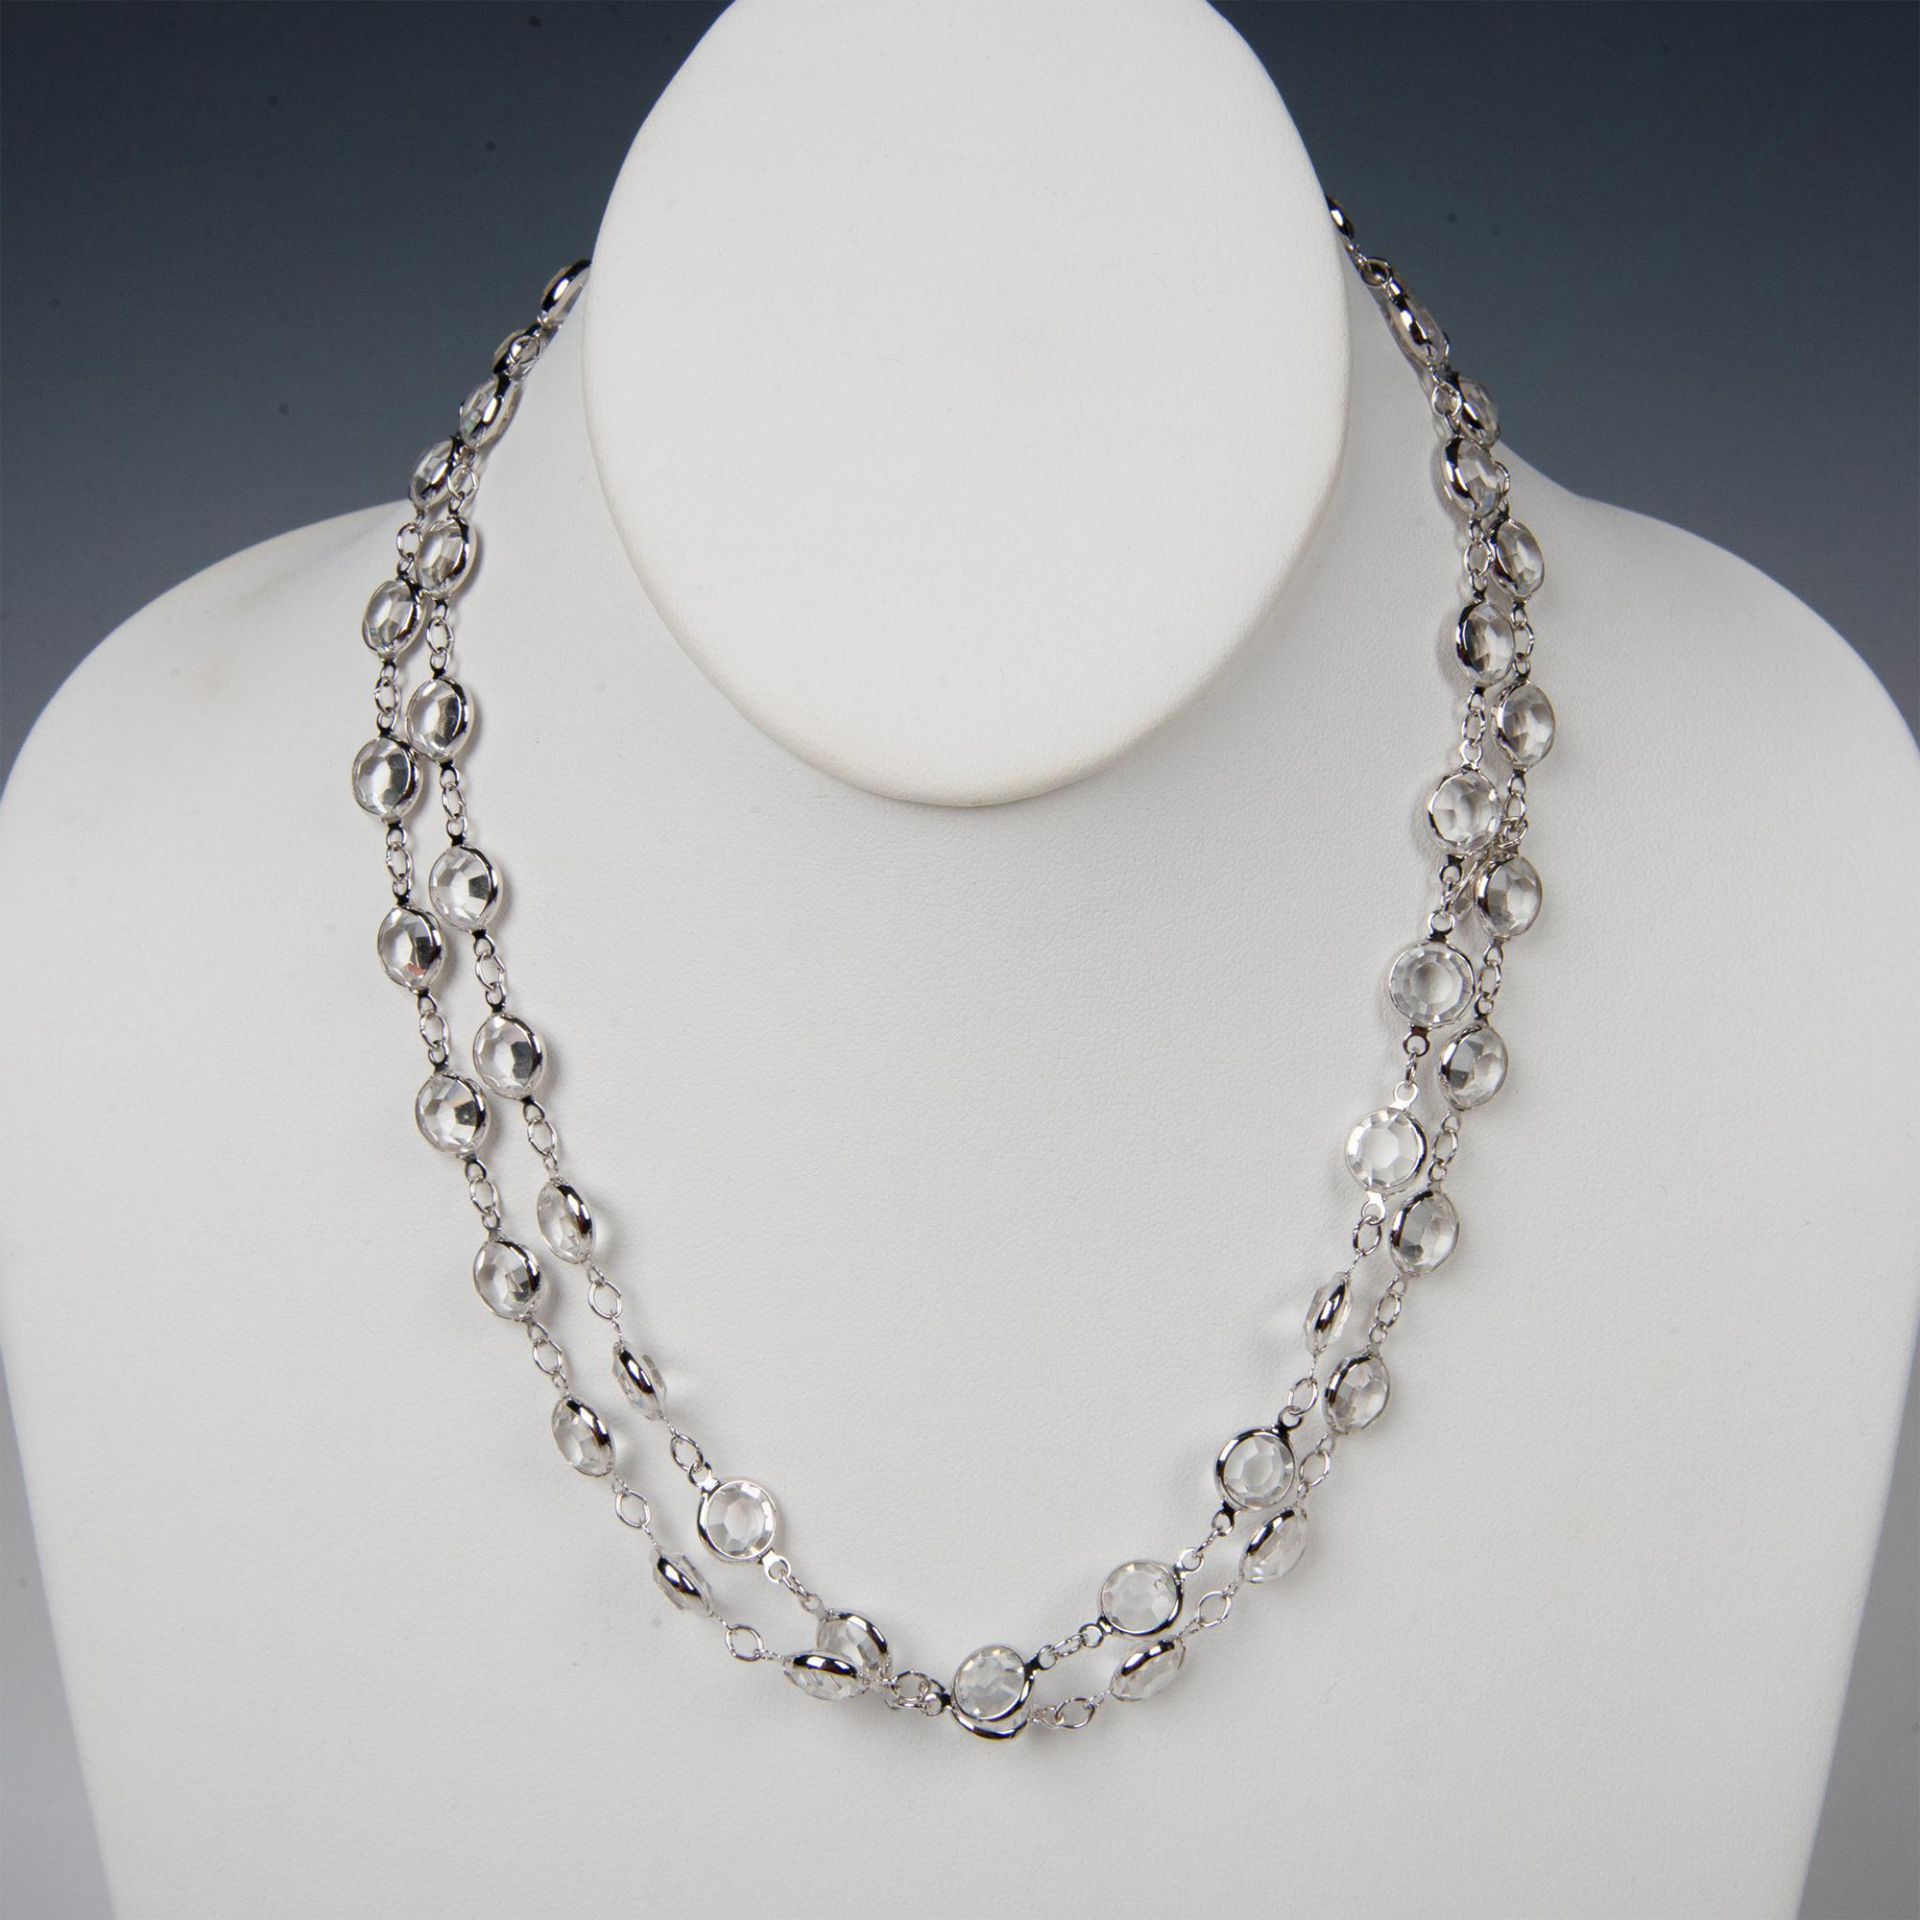 2pc Swarovski Crystal Necklace & Bracelet Set - Image 6 of 7